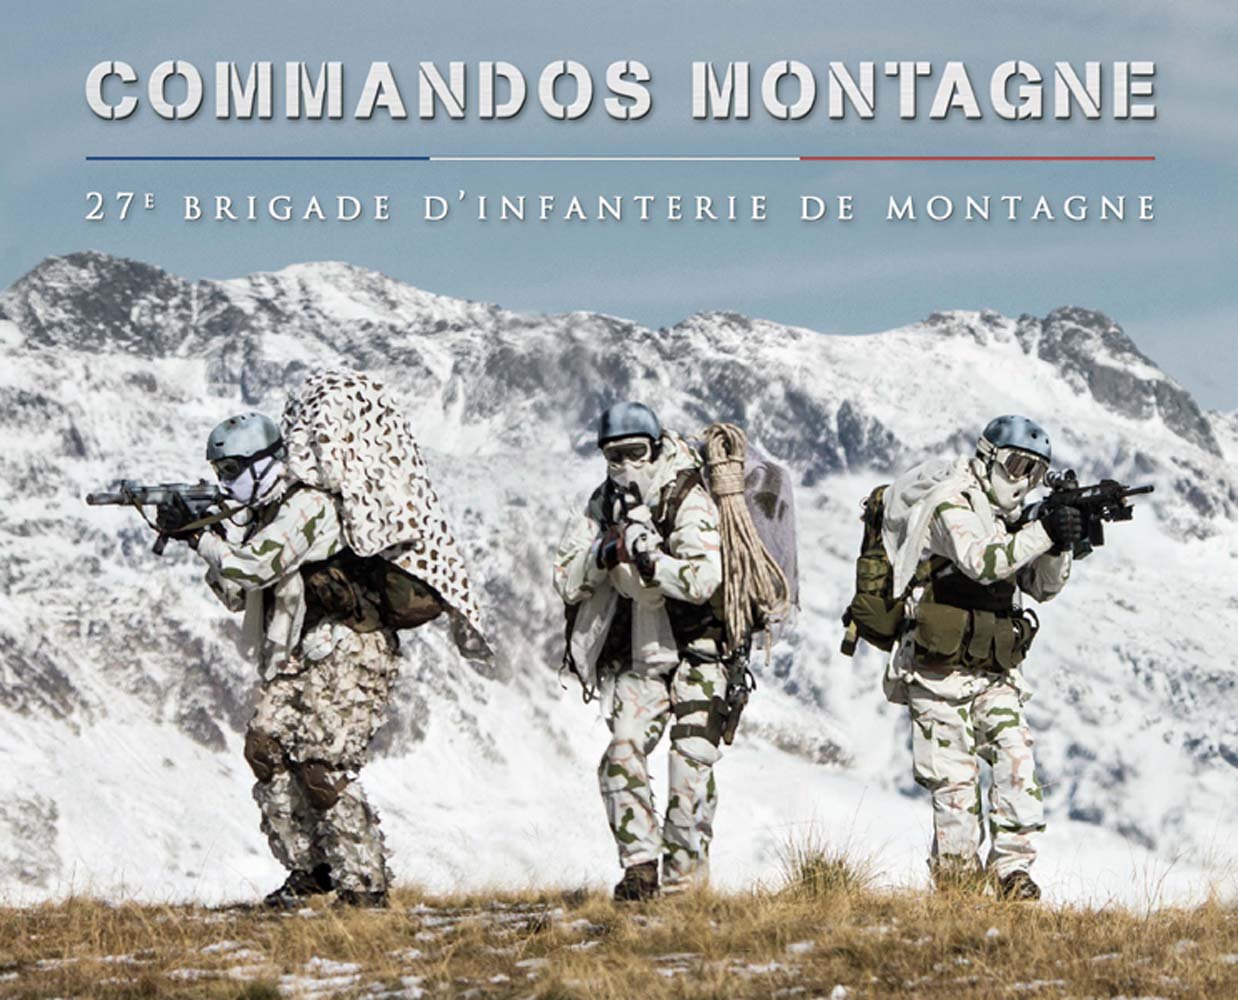 Γαλλική ορεινή ταξιαρχία: Δείτε πως εκπαιδεύονται  οι Γάλλοι στον ορεινό αγώνα στις Άλπεις